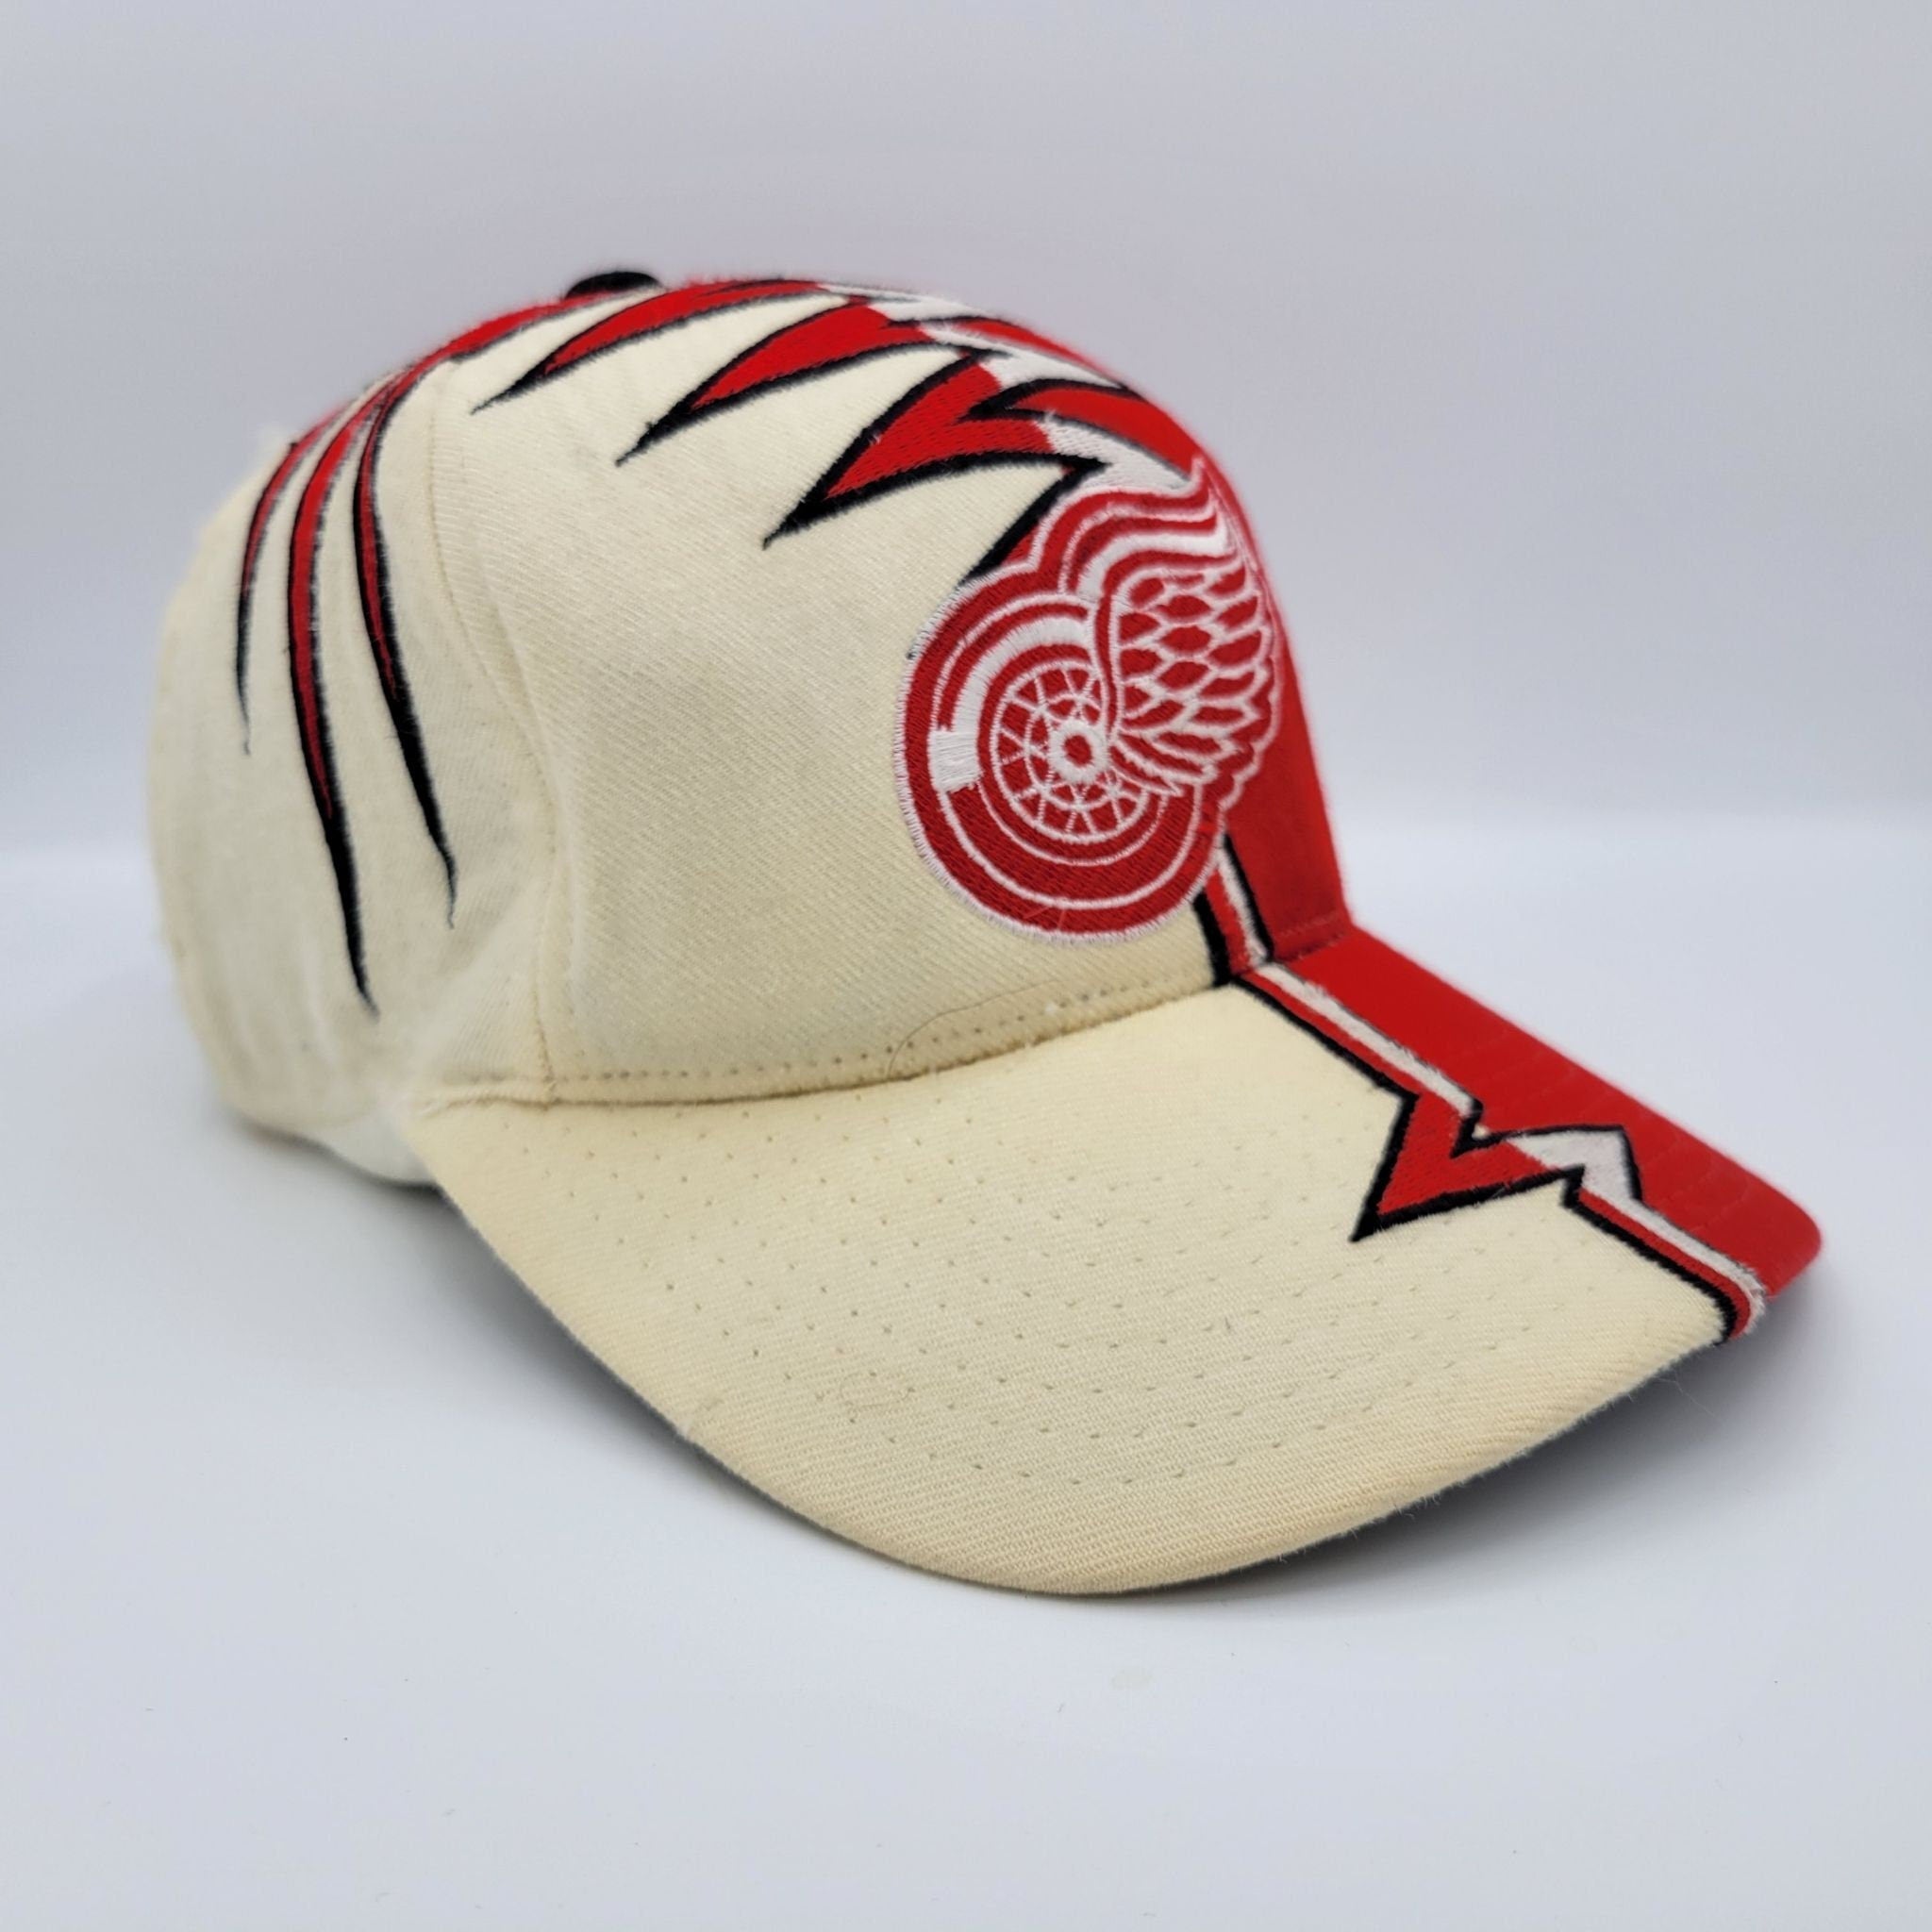 Phoenix coyotes Shockwave hat - Vintage-starter-shockwaves